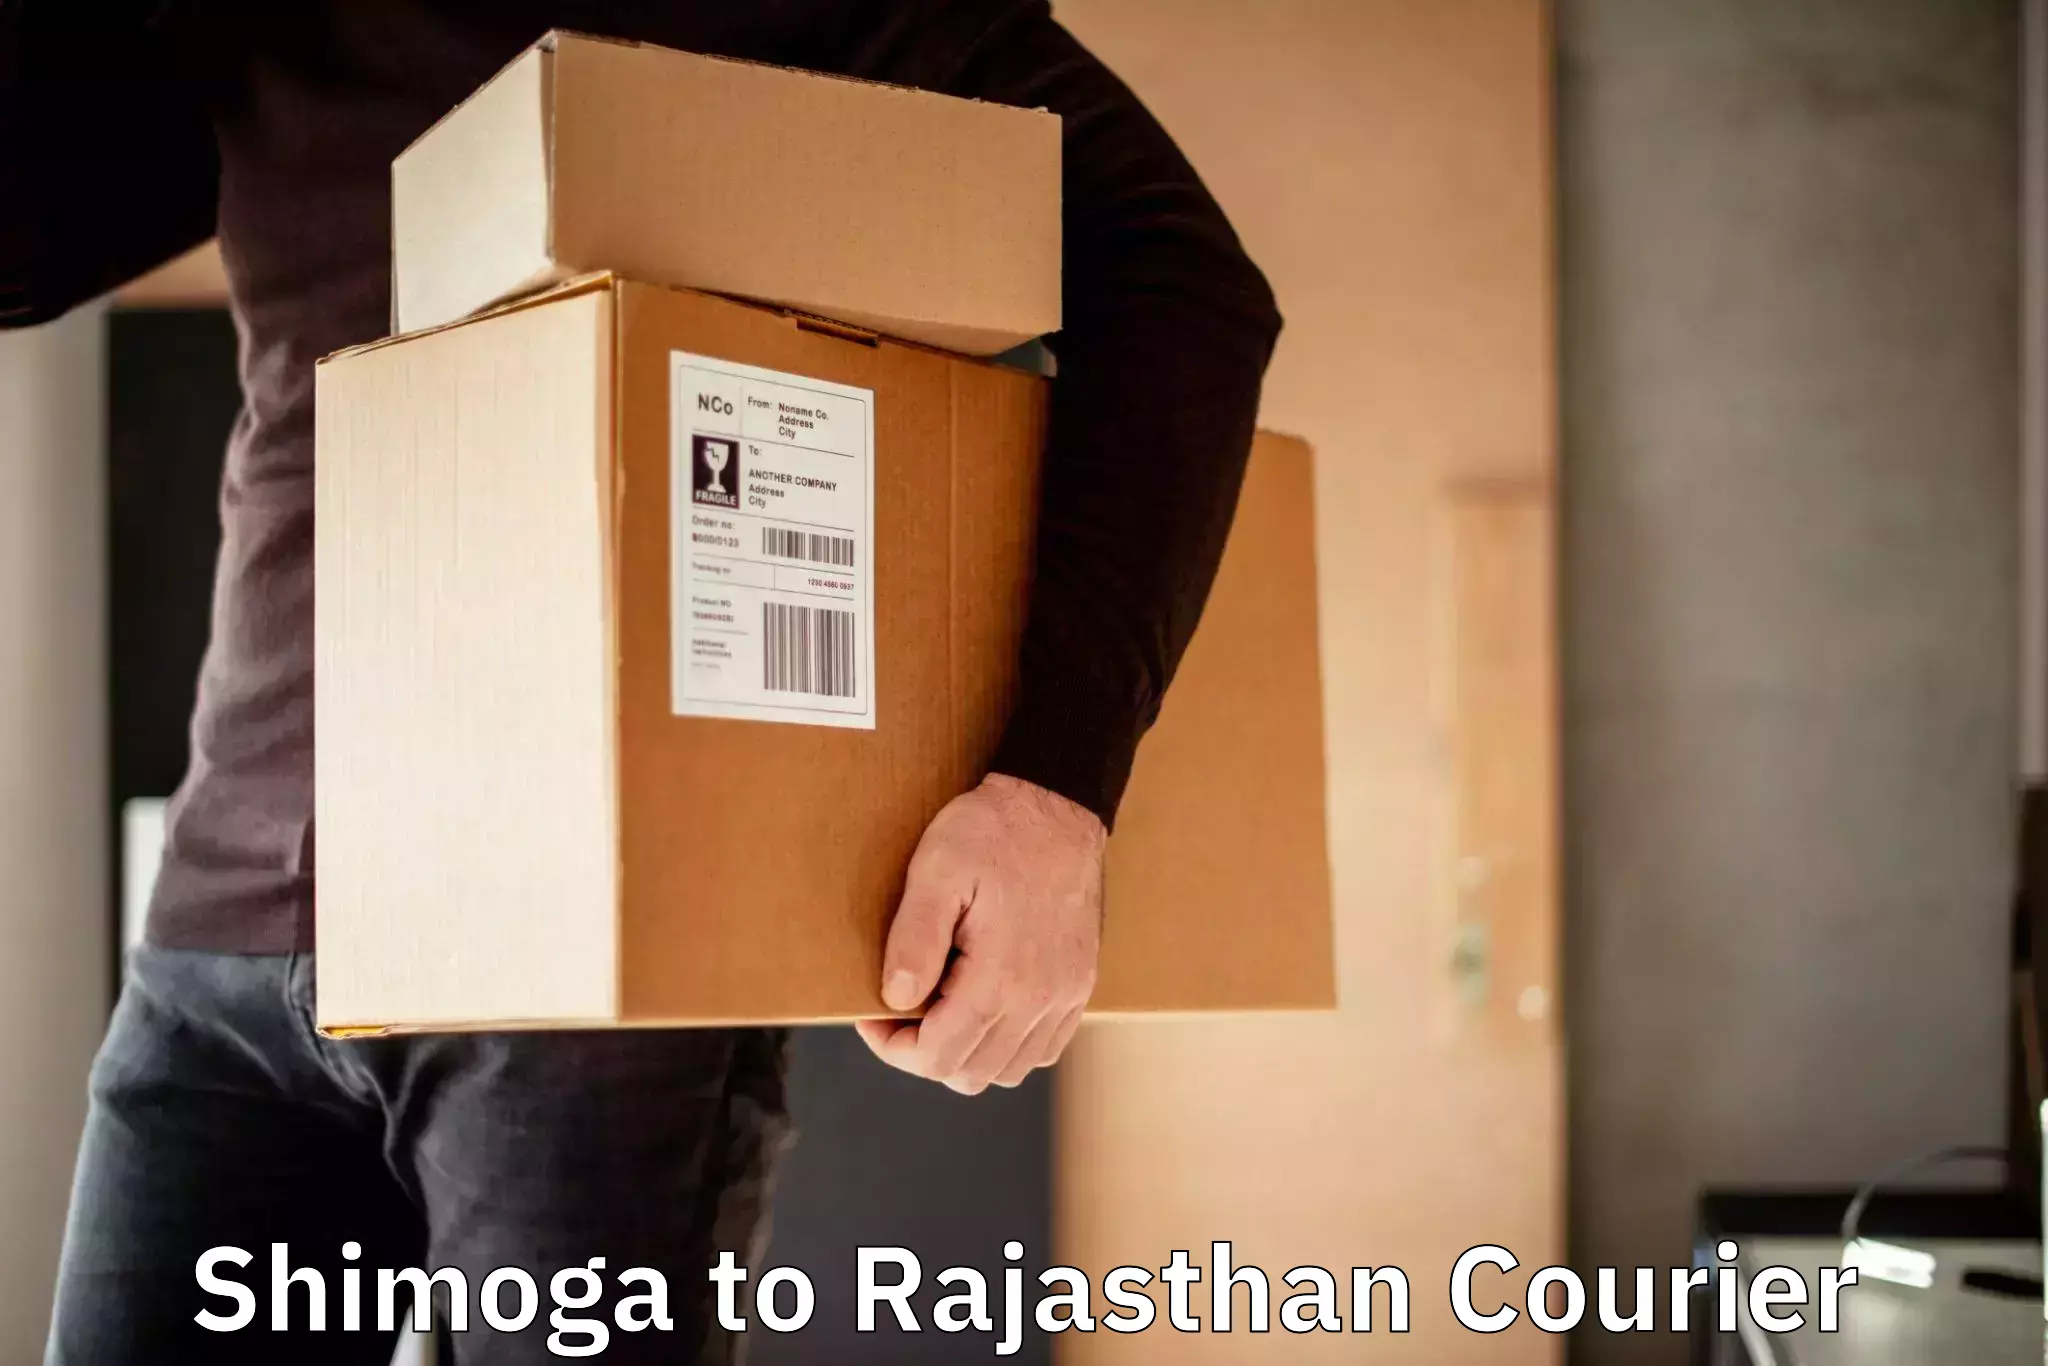 Affordable parcel service Shimoga to Rajasthan